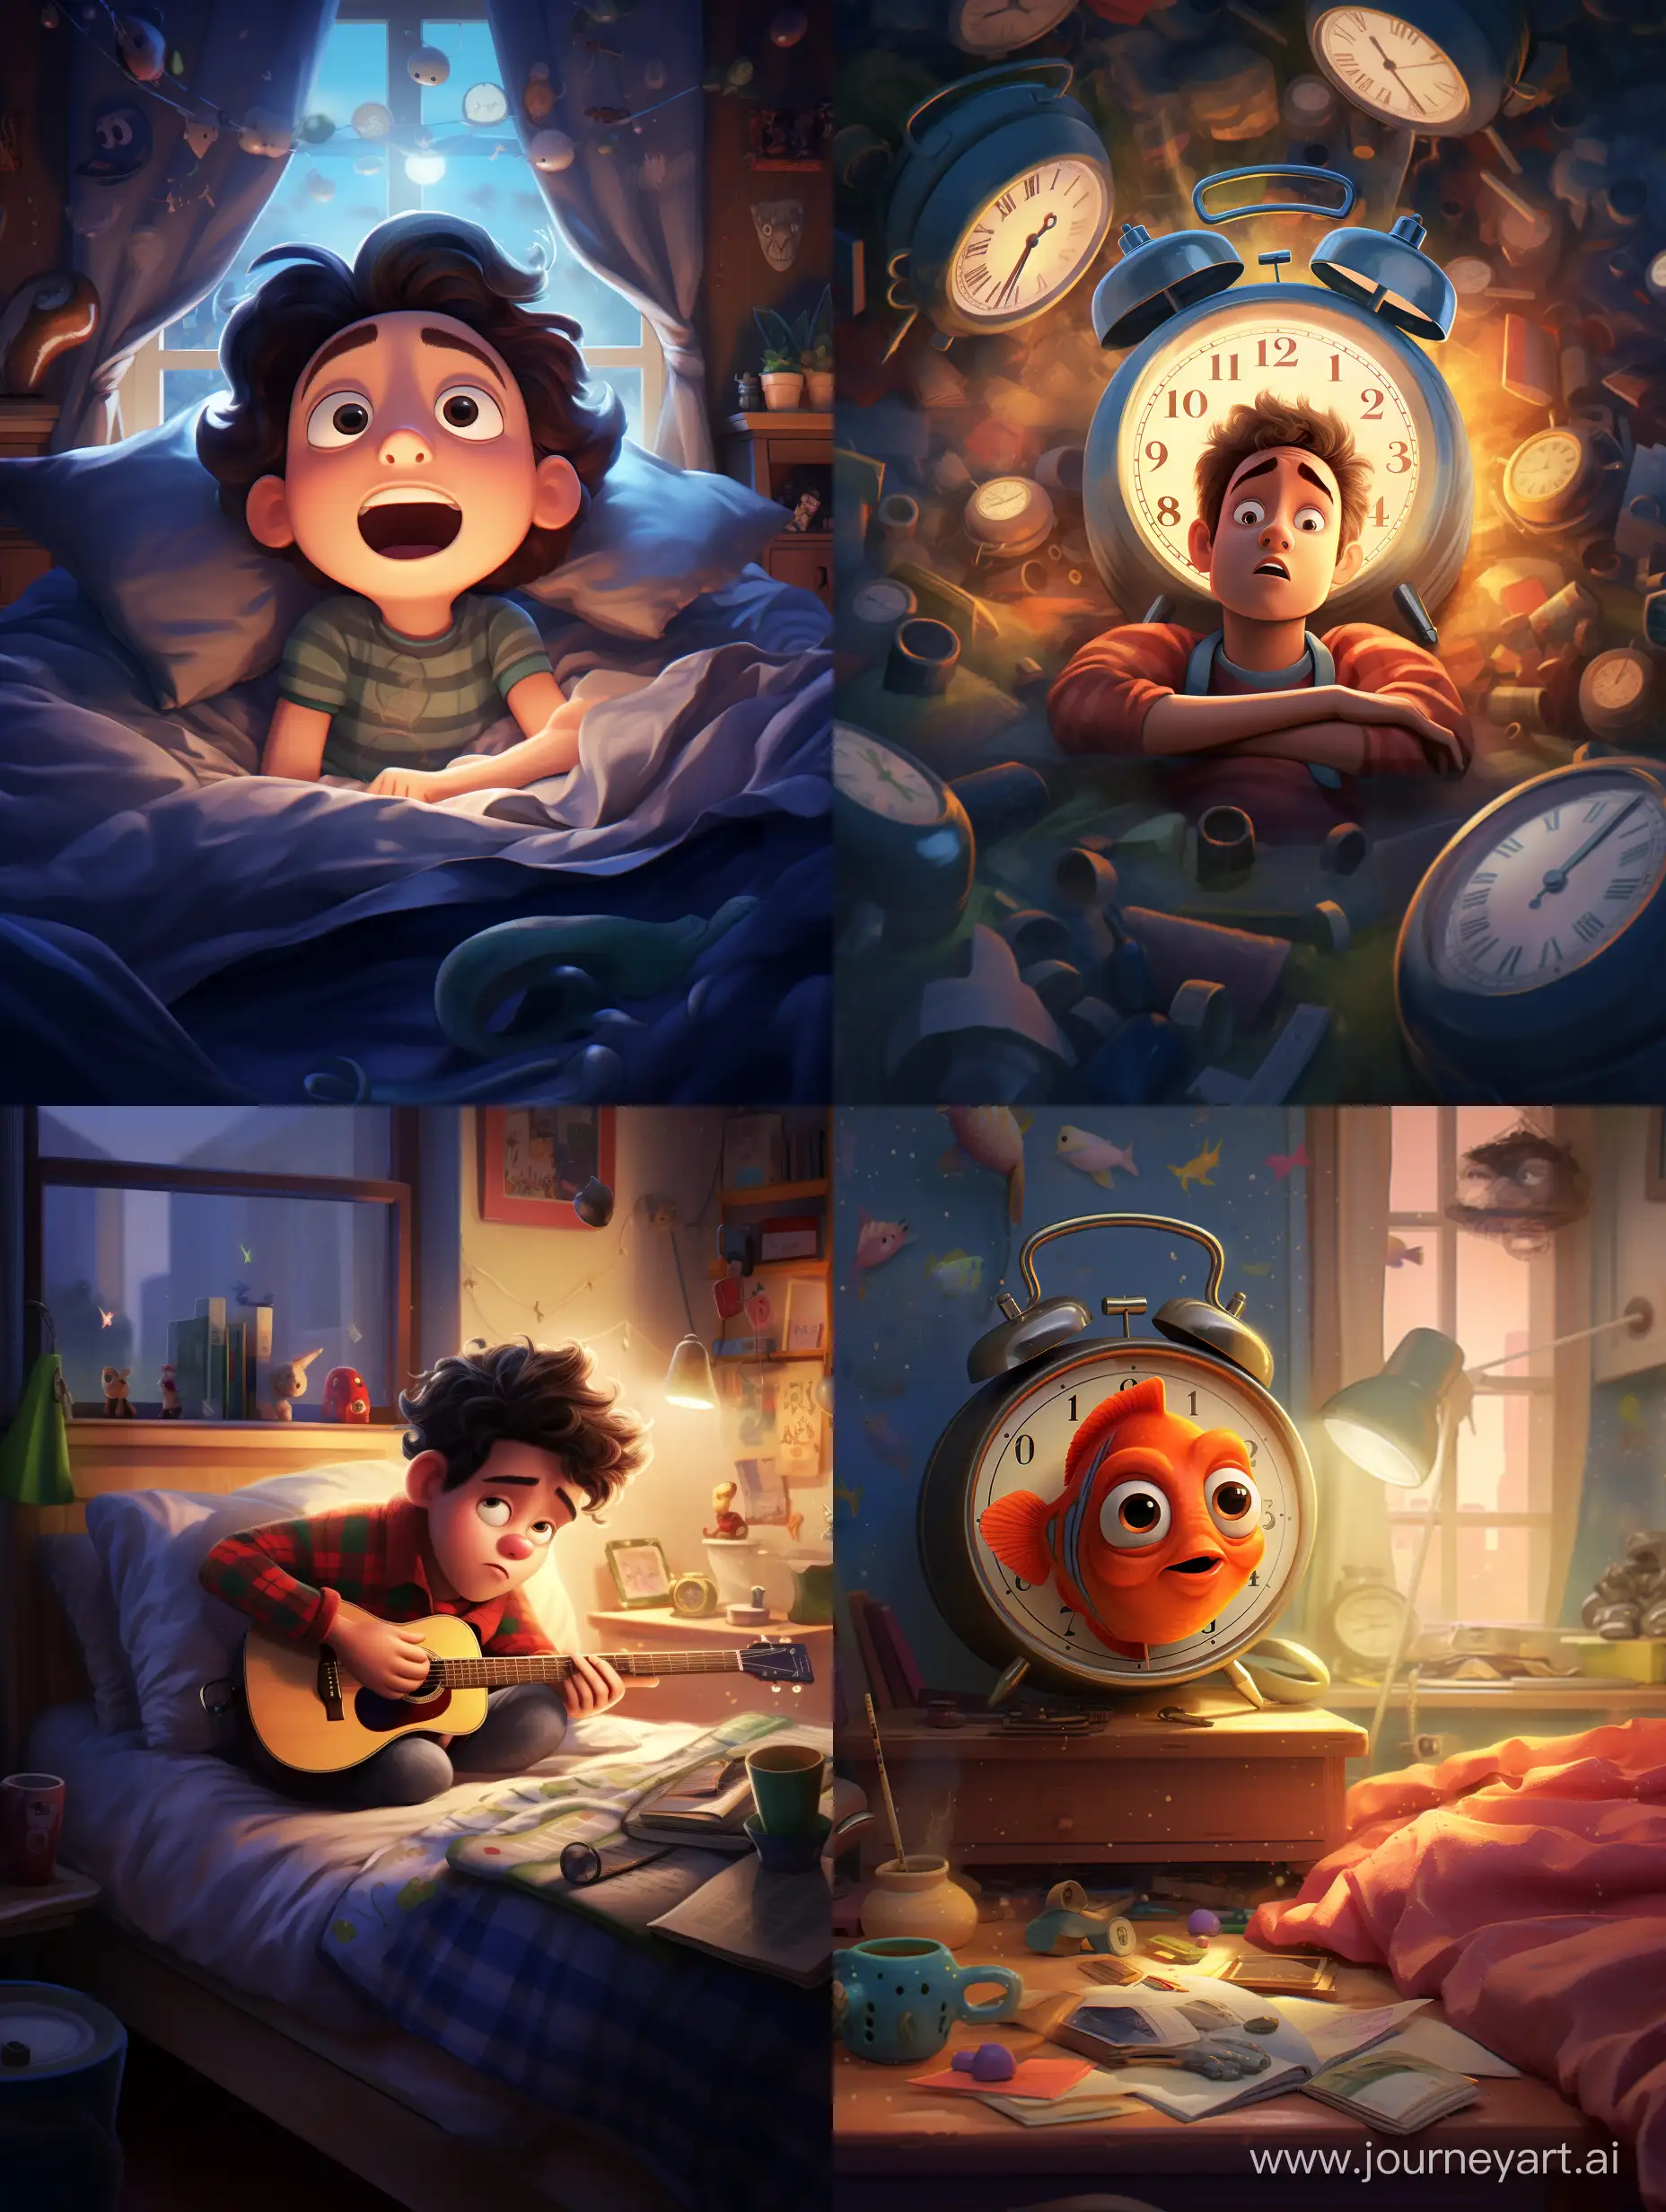 Joyful-Morning-Wakeup-in-Pixar-Style